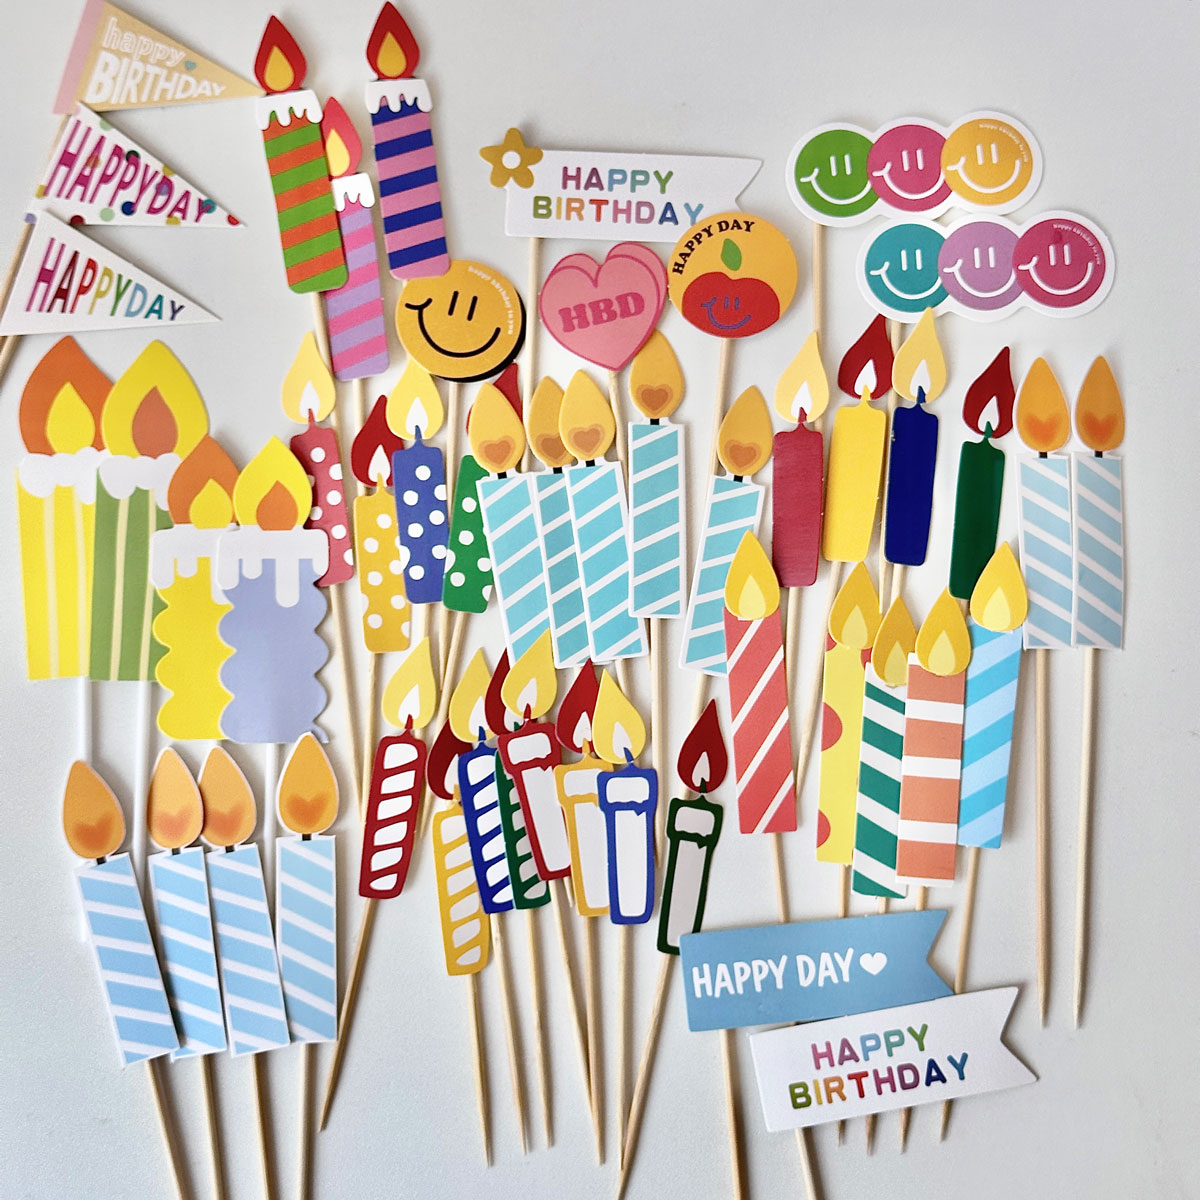 新品纸卡蜡烛蛋糕装饰插牌彩色马卡龙卡通创意生日蜡烛火苗小插件